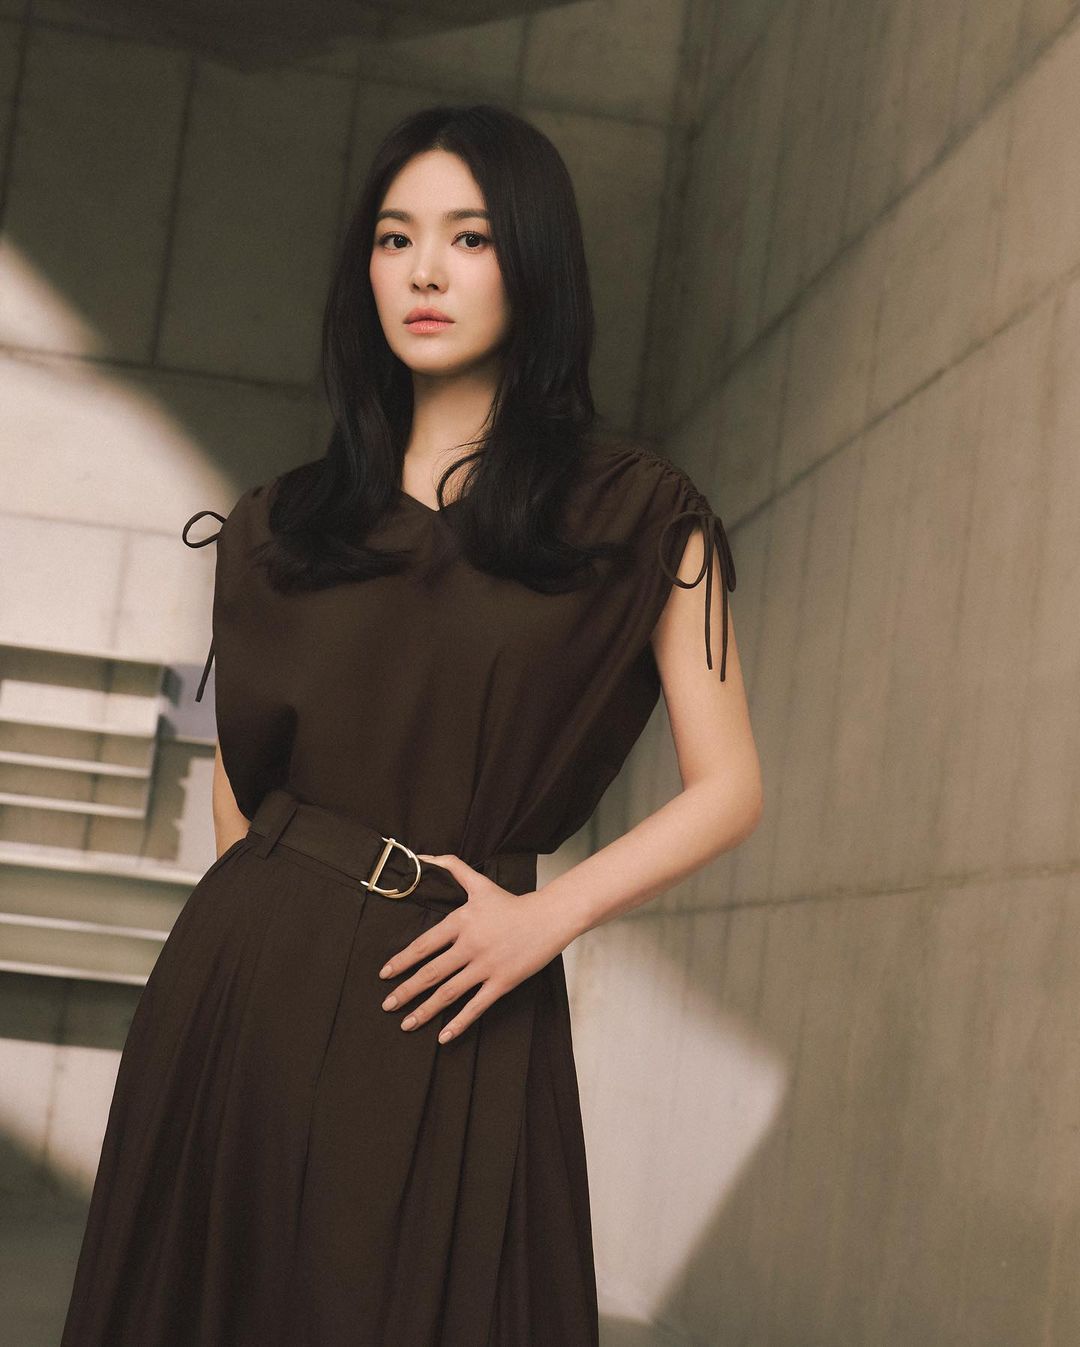 Song Hye Kyo khiến người hâm mộ thổn thức với vẻ đẹp không tuổi, đúng chuẩn tượng đài nhan sắc xứ Hàn- Ảnh 4.